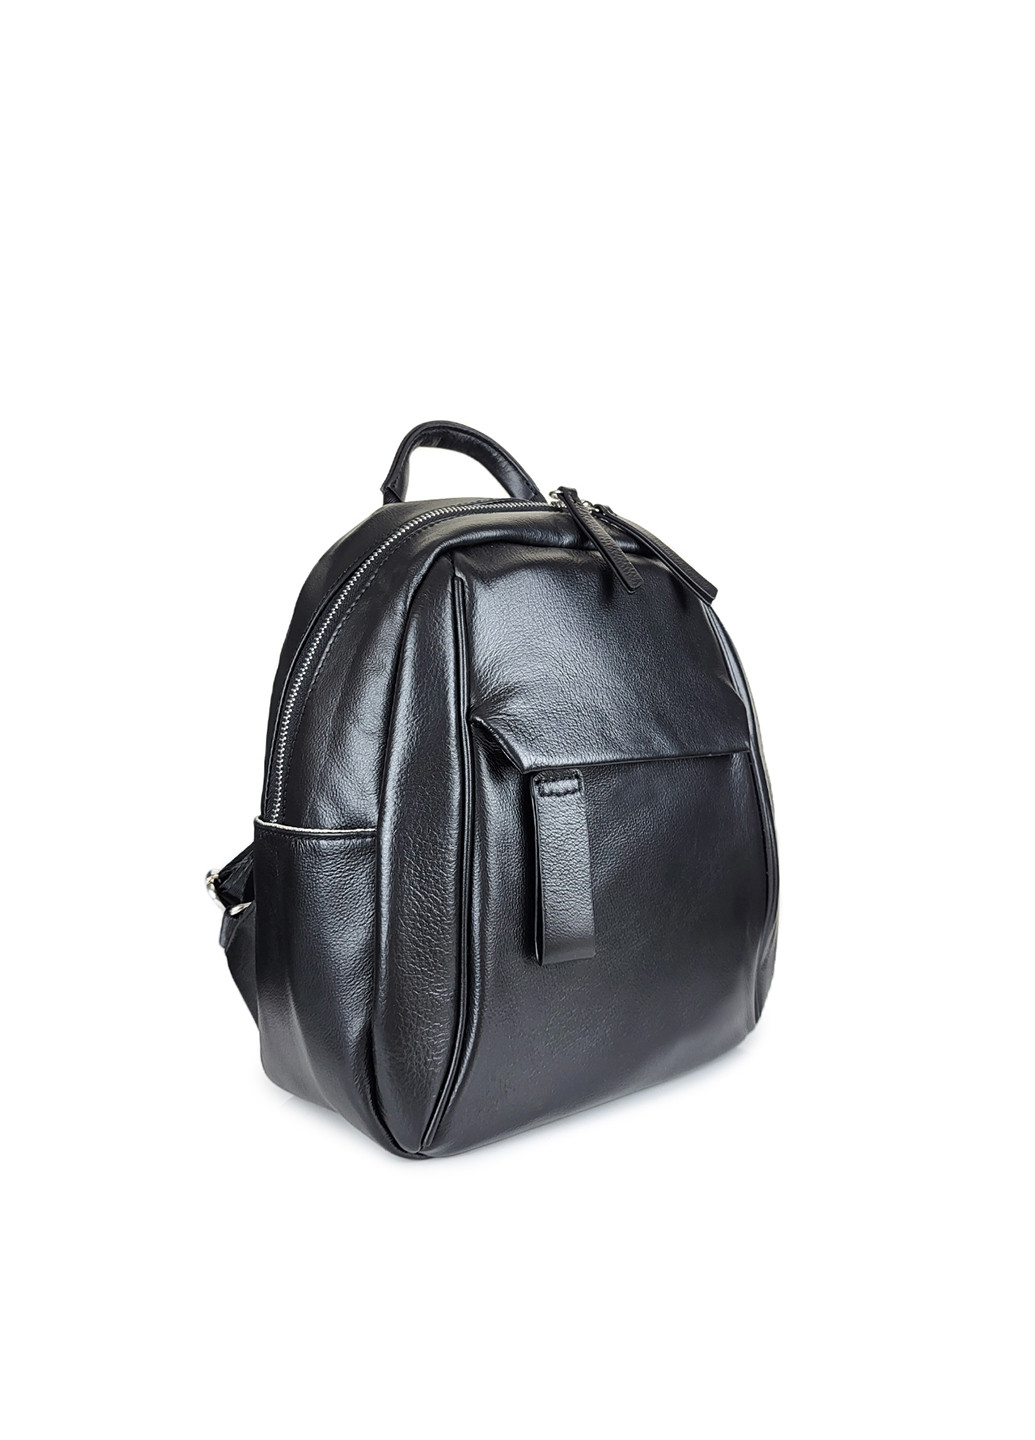 Чорный рюкзак женский средний кожа,,3389 чорн Fashion (269994417)